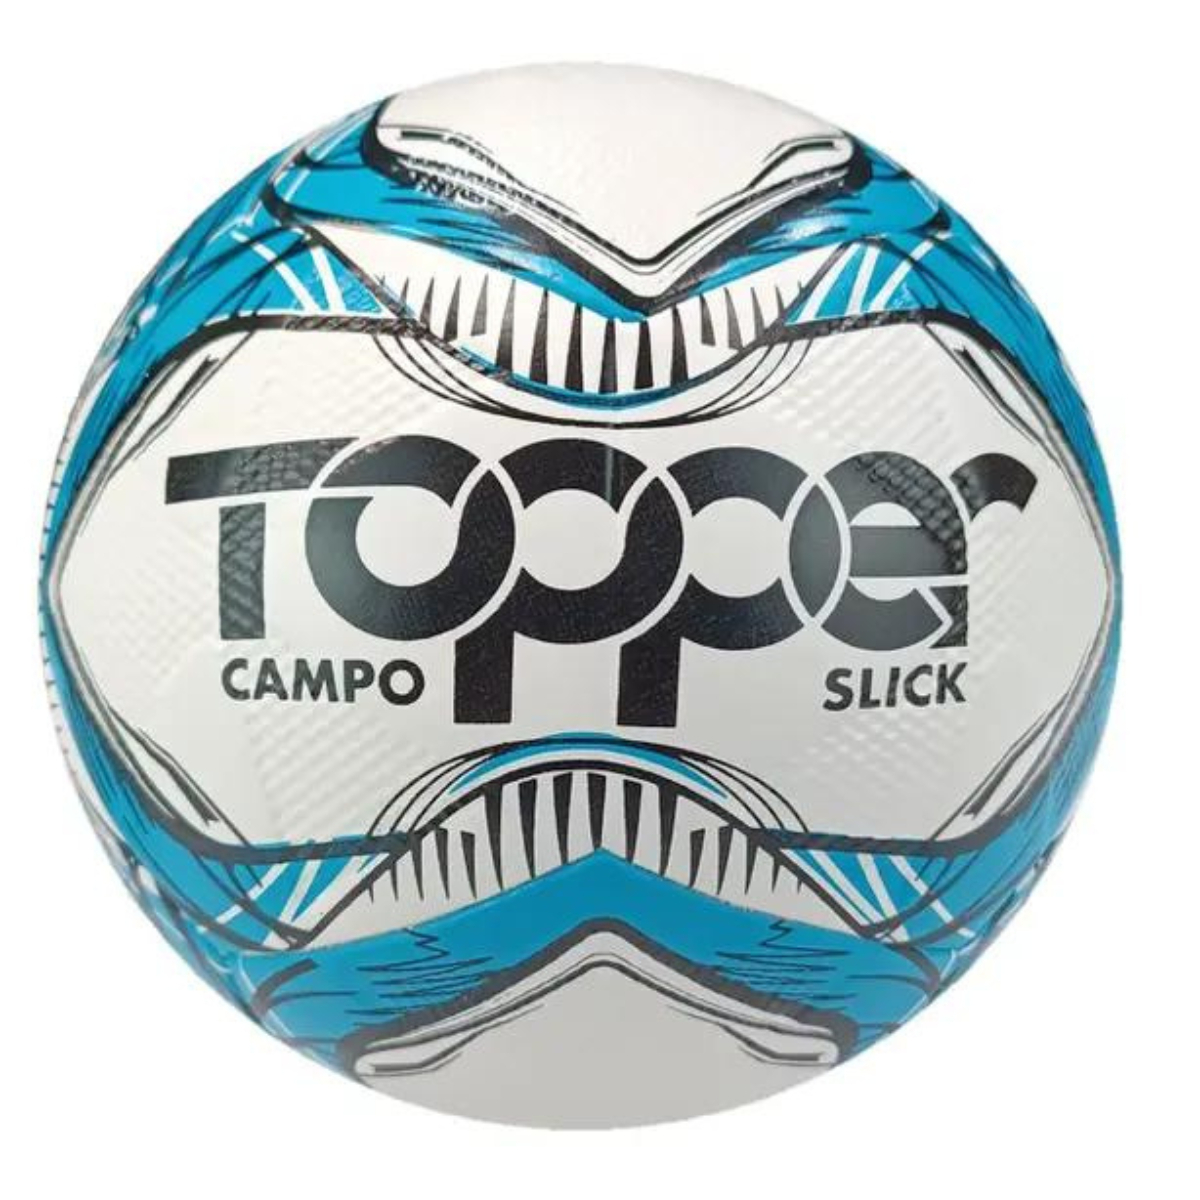 Bola Futebol De Campo Slick 2020 Cor Azul/Preto Topper